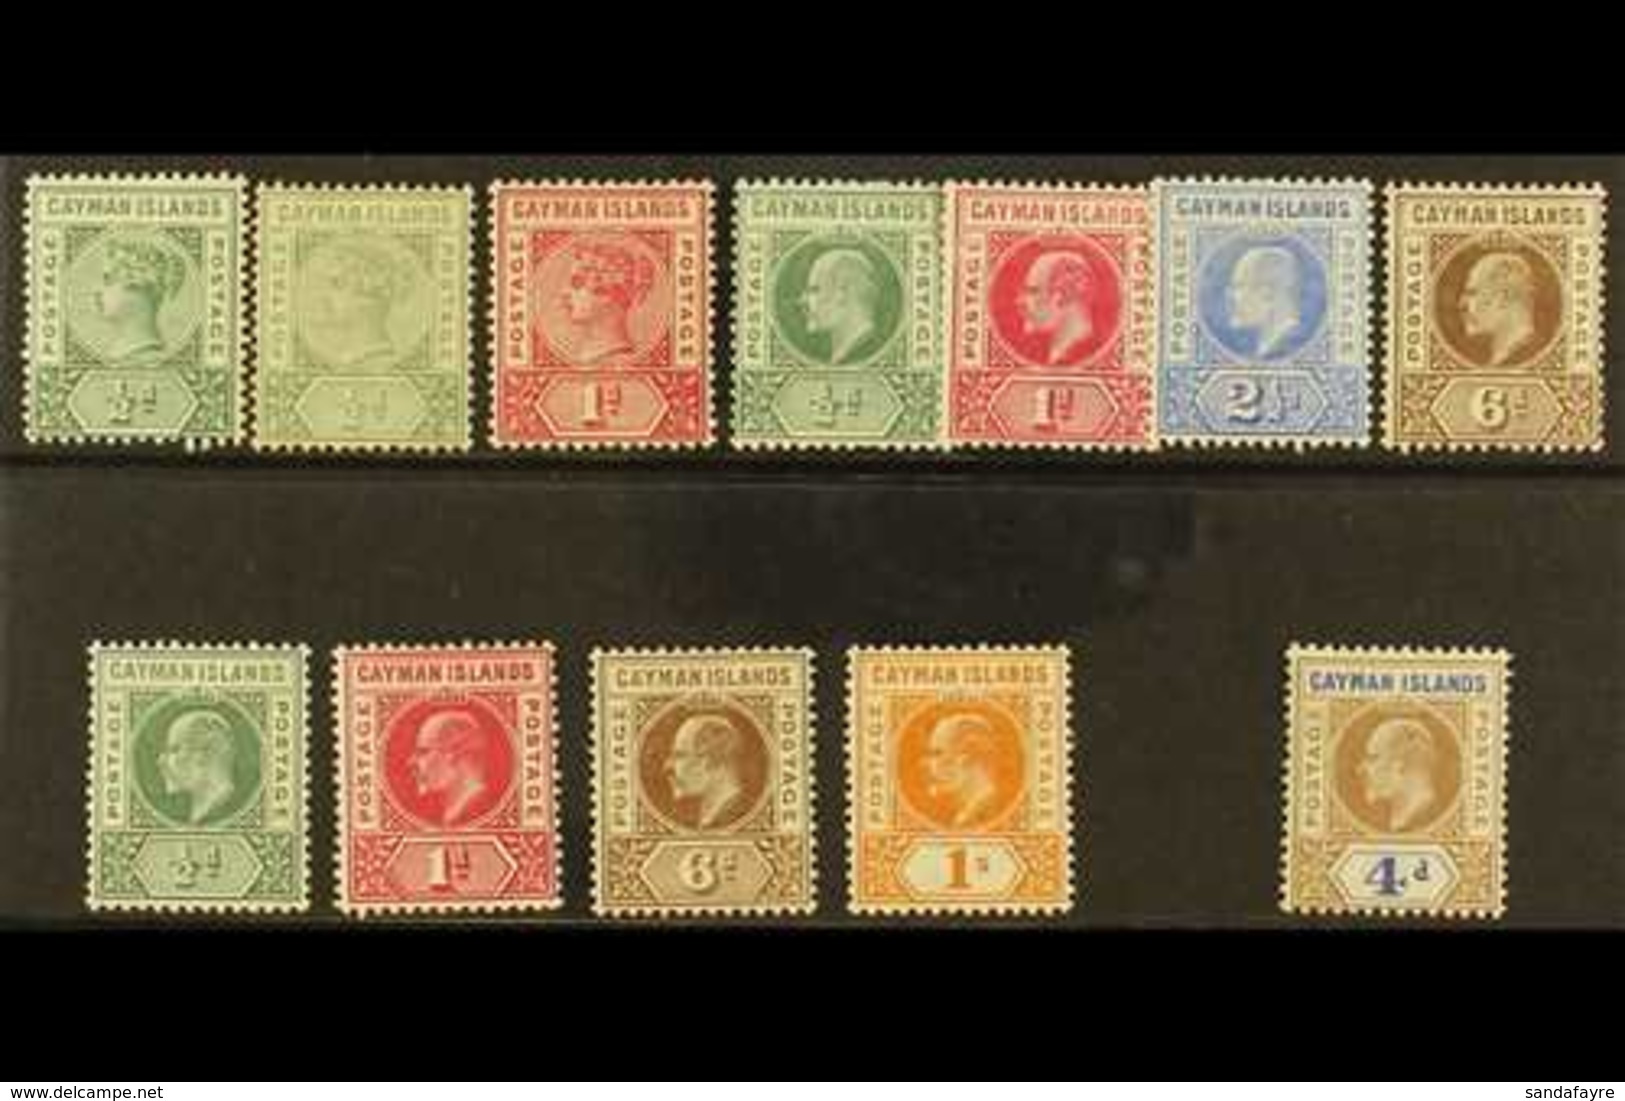 1900-1907 FINE MINT GROUP Incl. 1900 ½d Shades & 1d, 1902-3 ½d To 2½d & 6d, 1905 ½d, 1d, 6d & 1s, 1907 4d, Between SG 1/ - Kaaiman Eilanden